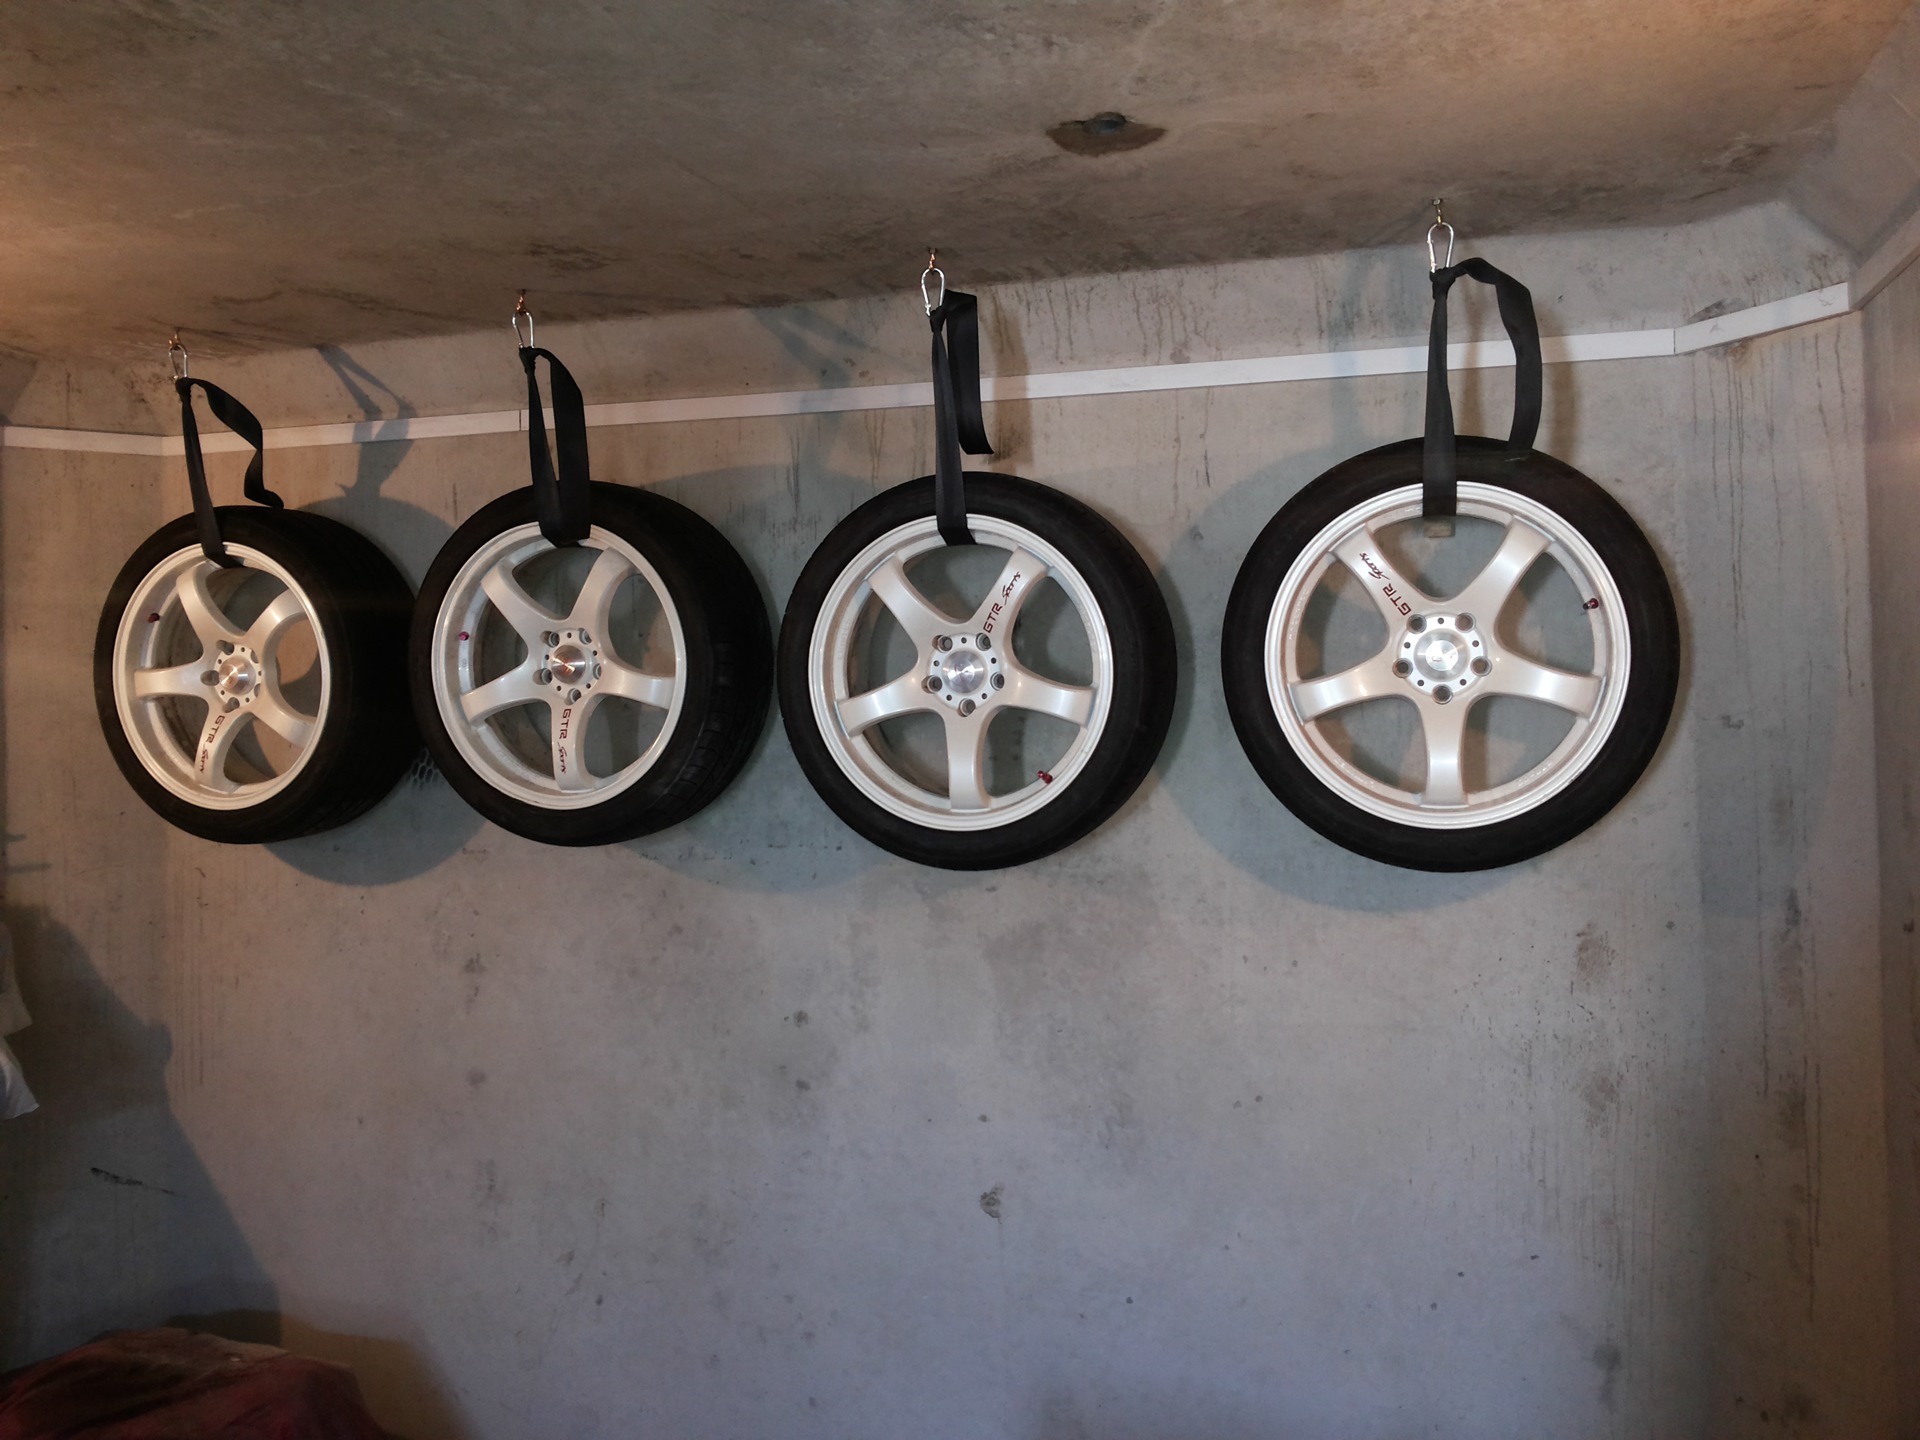 Хранение зимней резины. Хранение колес в гараже. Приспособления для хранения колес в гараже. Полки для хранения колес в гараже. Правильное хранение колес на дисках.